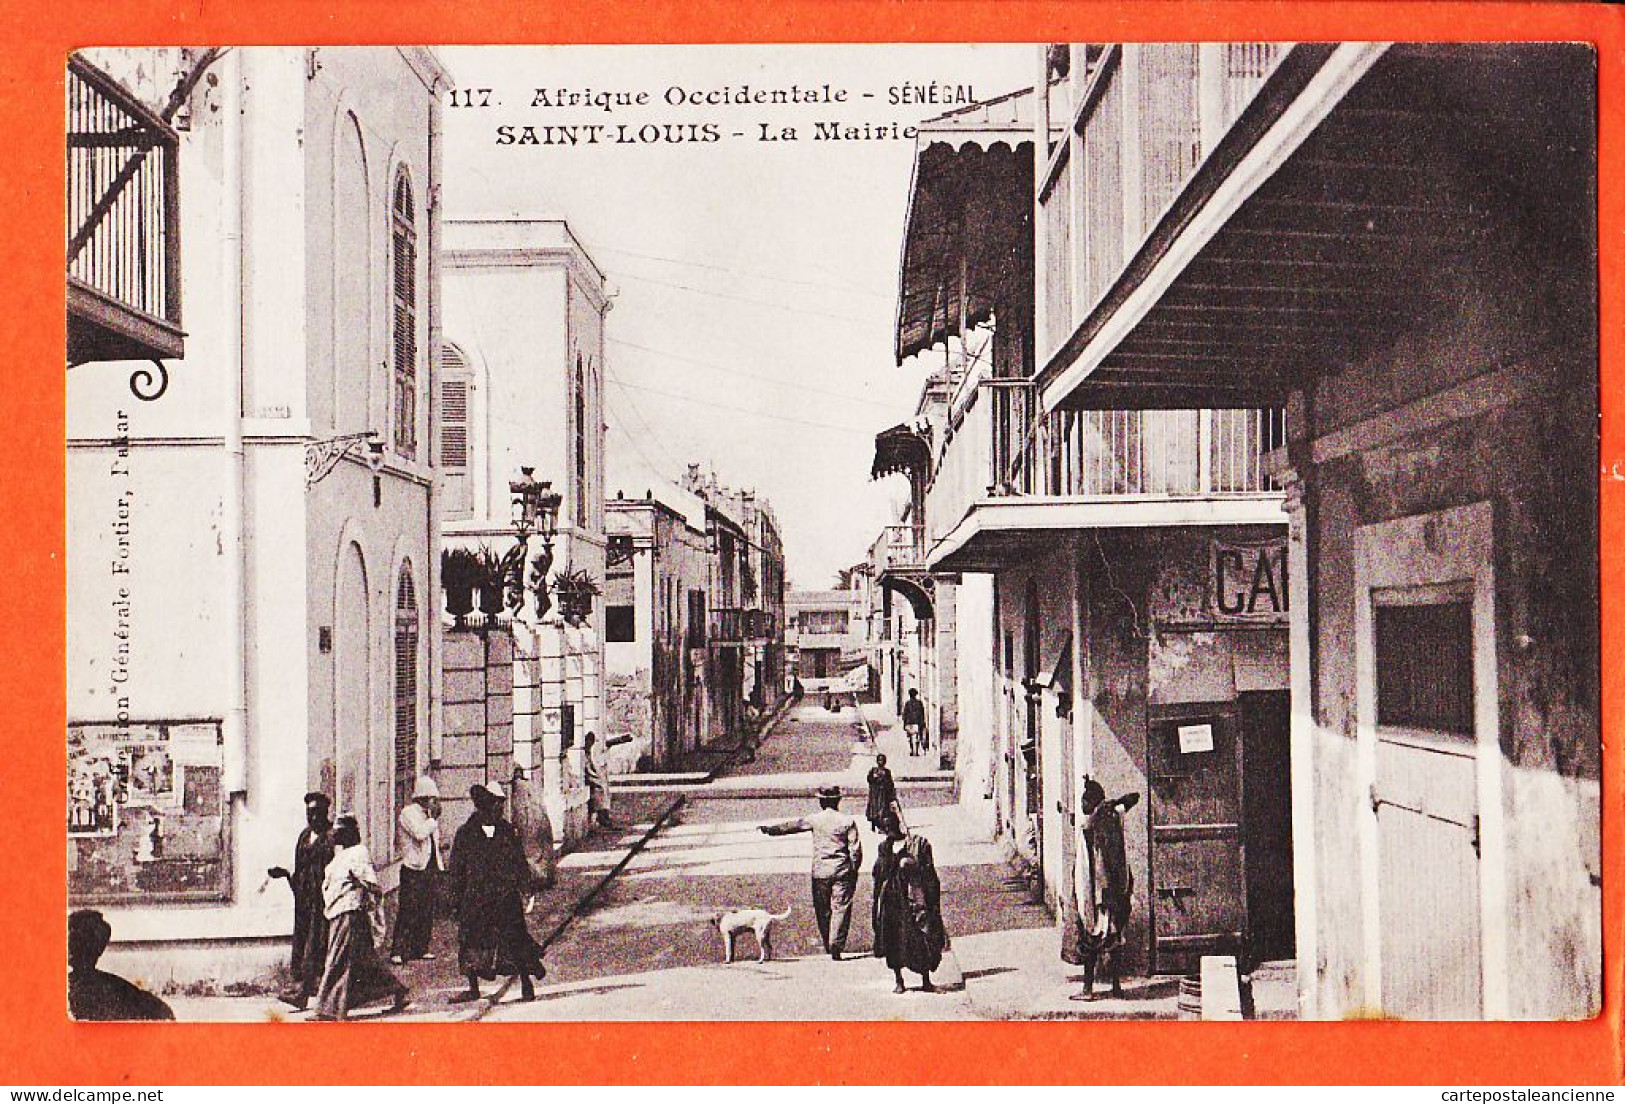 32718 / ⭐ (•◡•) SAINT-LOUIS Senegal St ◉ Scene De Rue De La Mairie 1910s ◉ Collection FORTIER 117 ◉ Afrique Occidentale - Senegal